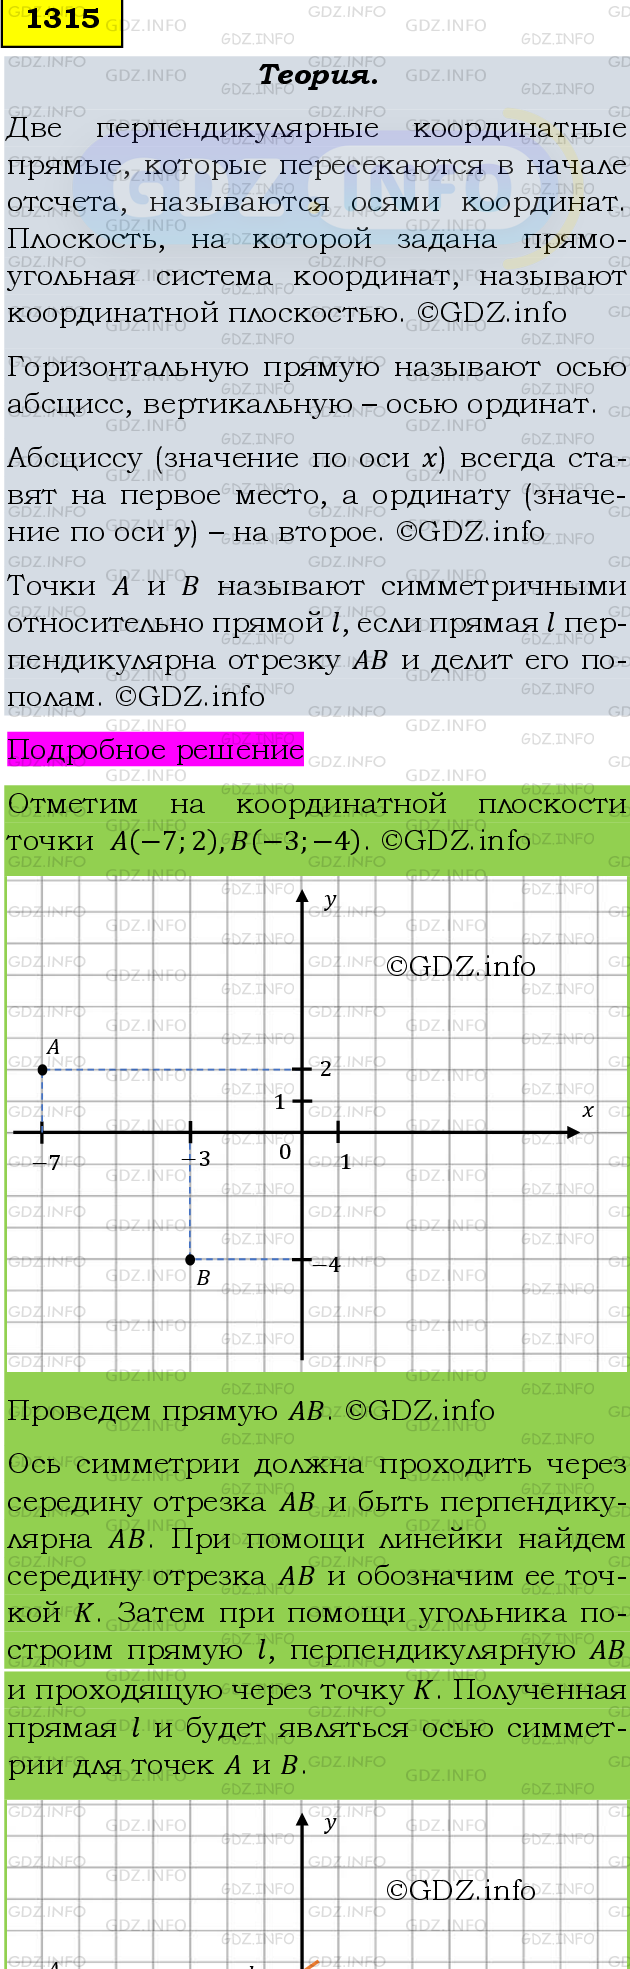 Фото подробного решения: Номер №1315 из ГДЗ по Математике 6 класс: Мерзляк А.Г.